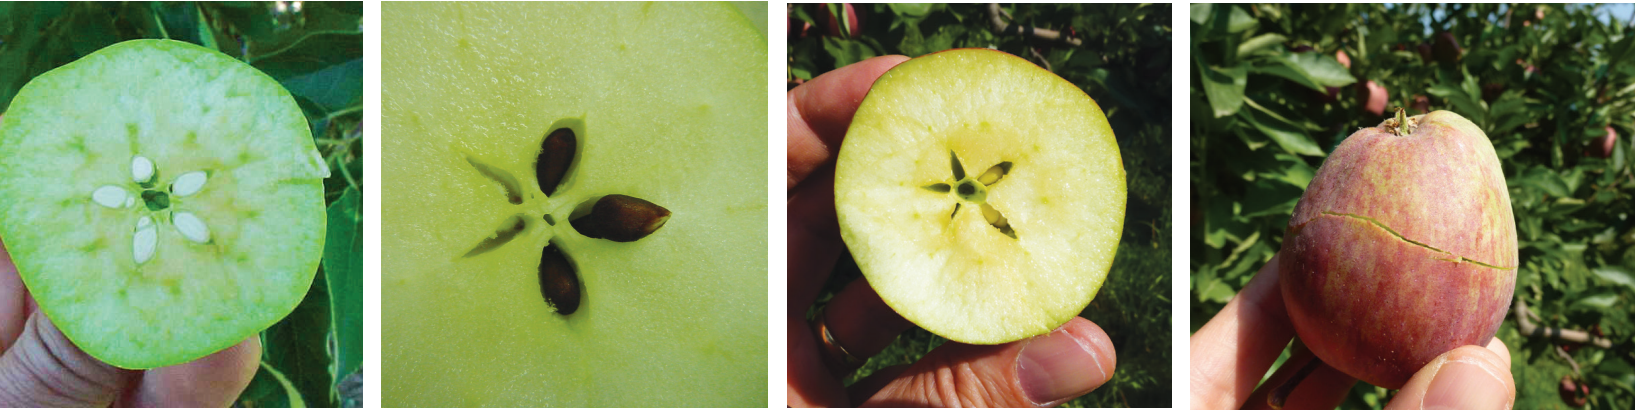 Factores y manejos que influyen en la floración, polinización y cuaja en manzanos